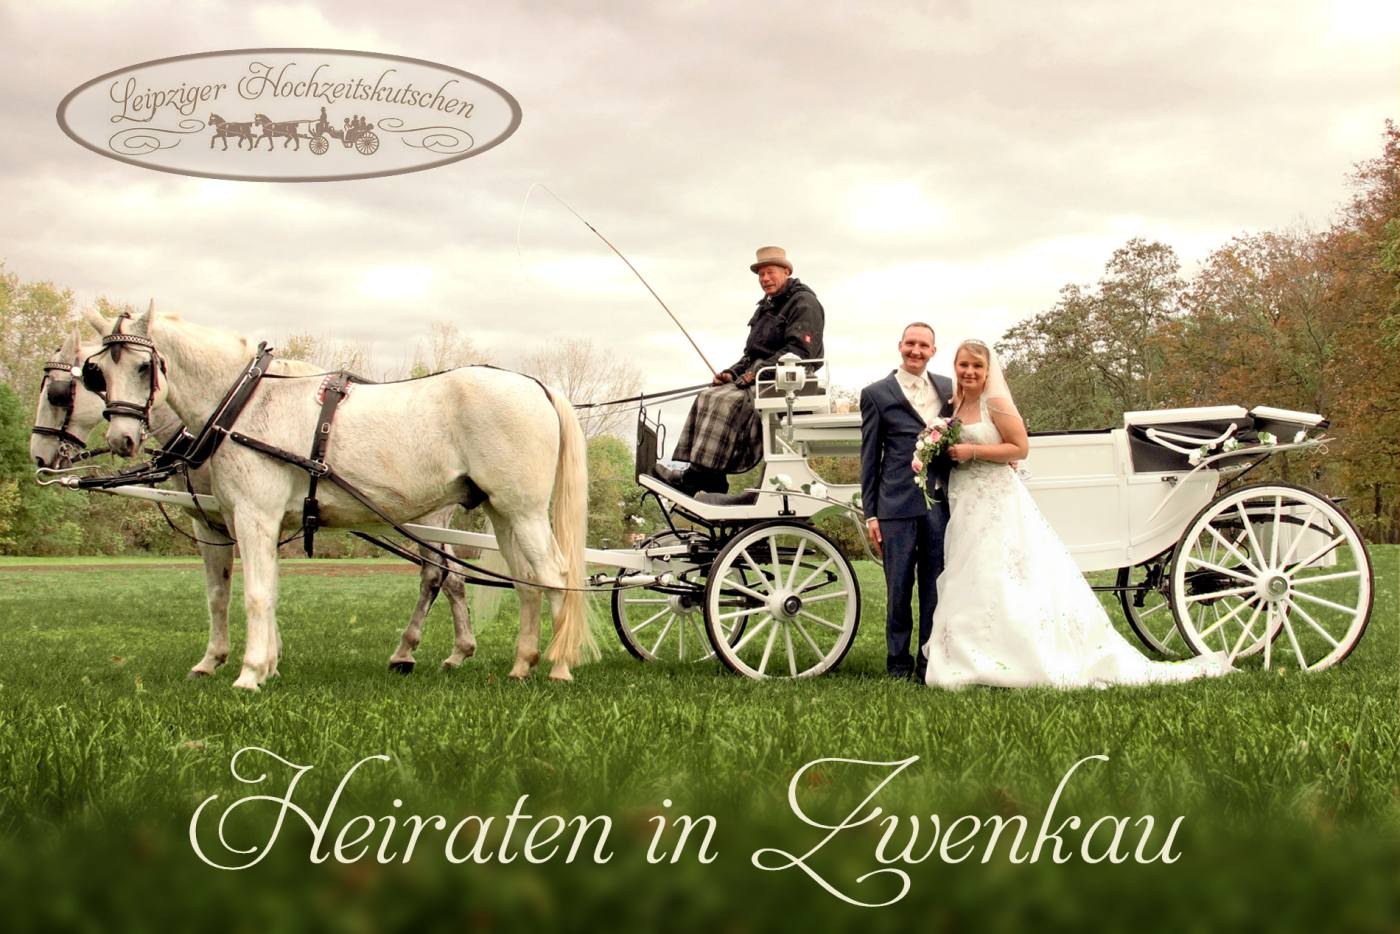 Bild: Traditionell Heiraten in Zwenkau mit weier Pferdekutsche